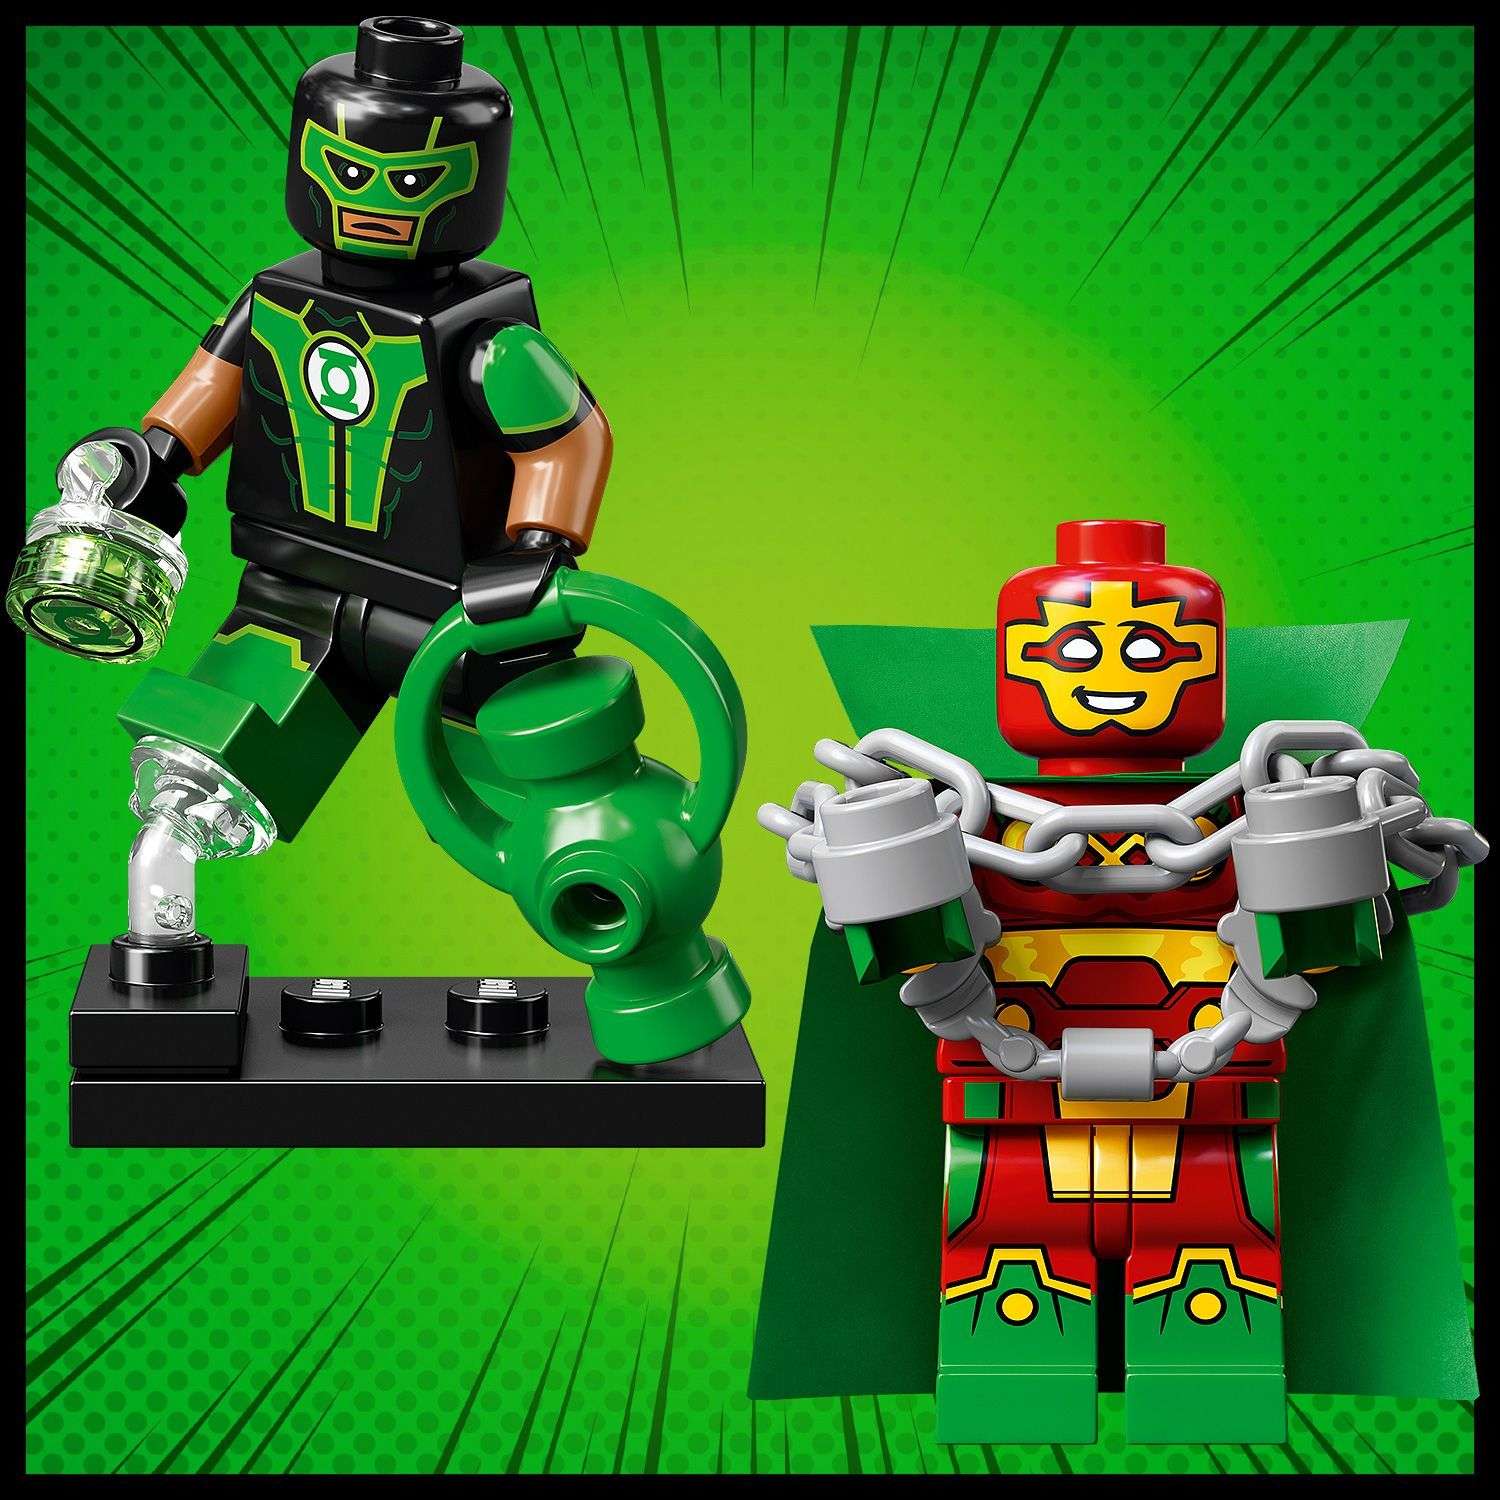 Конструктор LEGO Minifigures DC Super Heroes Series 71026 - фото 6